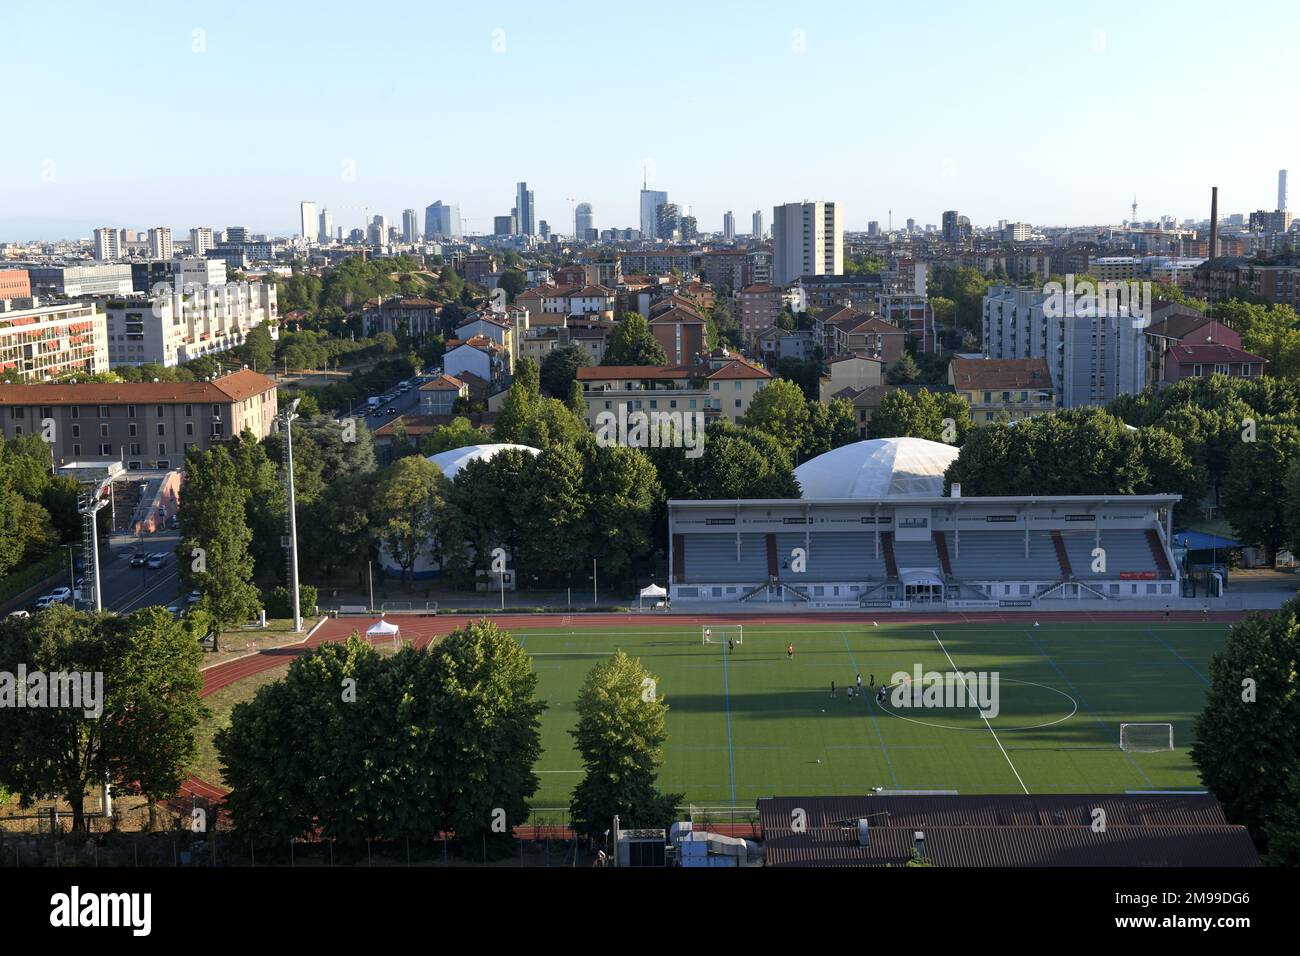 Vue imprenable sur le stade de football d'une banlieue avec l'horizon de Milan en arrière-plan Banque D'Images